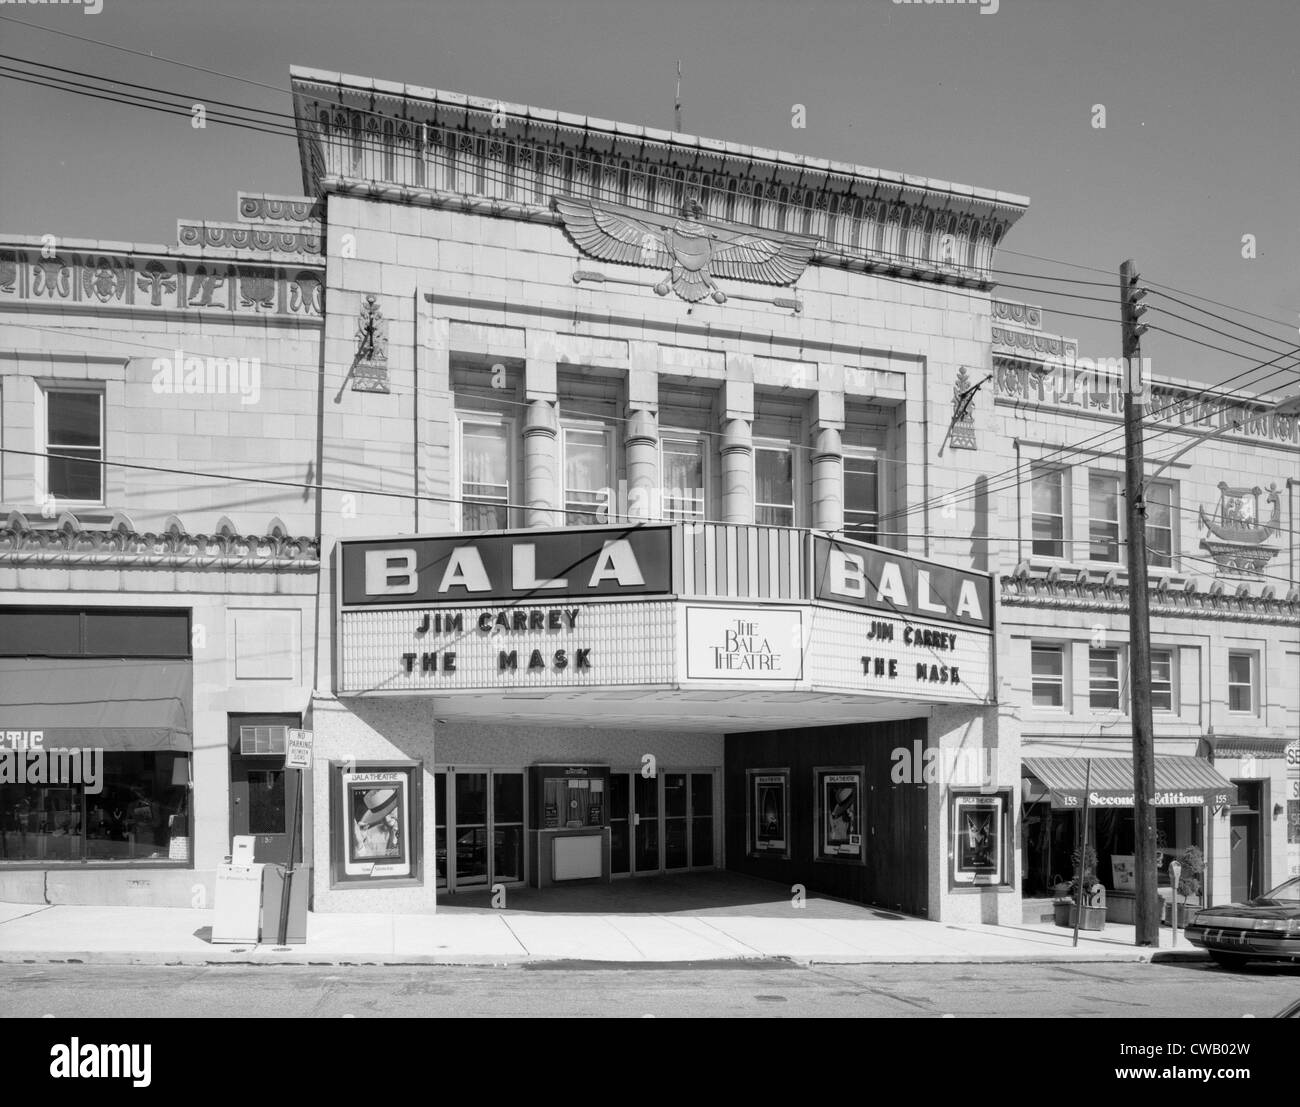 Teatri e Cinema, il teatro egiziano, che mostra la maschera, 157 Bala Avenue, Bala-Cynwyd, Pennsylvania, circa 1994. Foto Stock